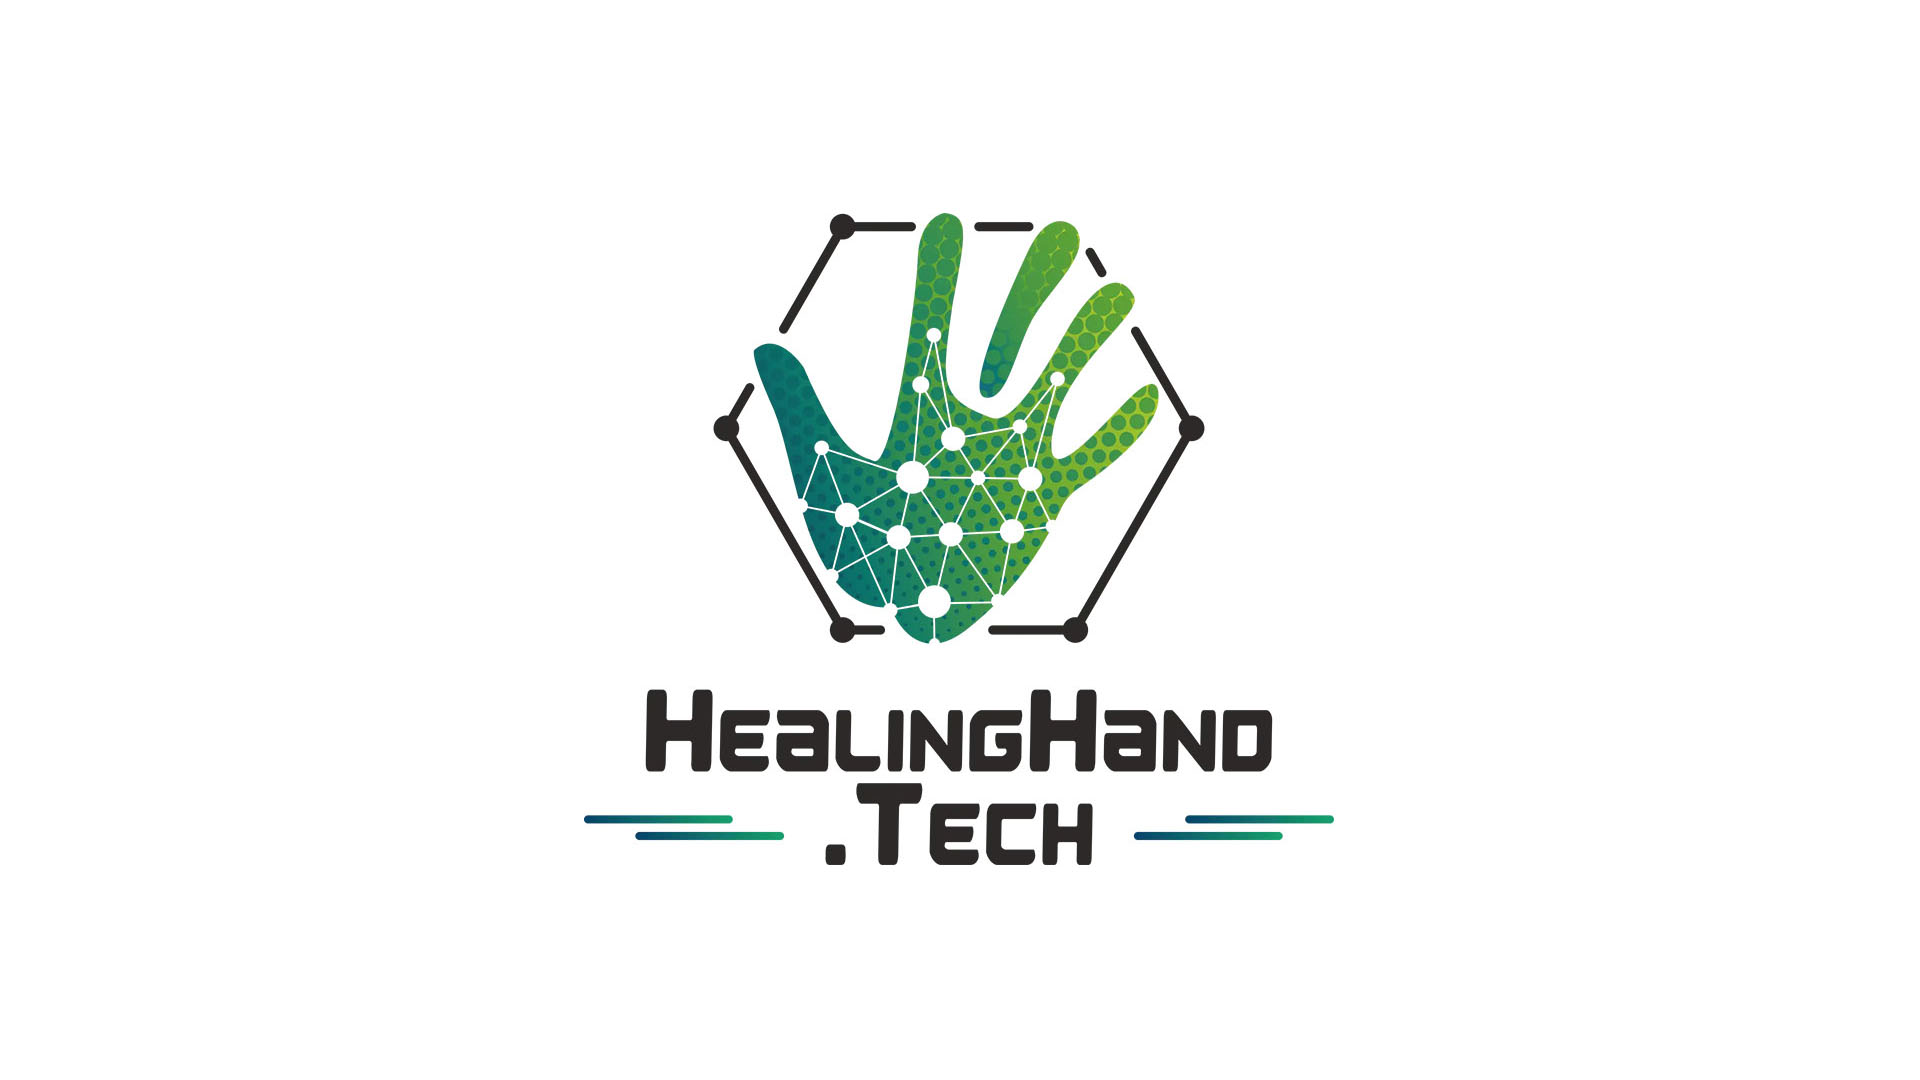 HealingHand Tech